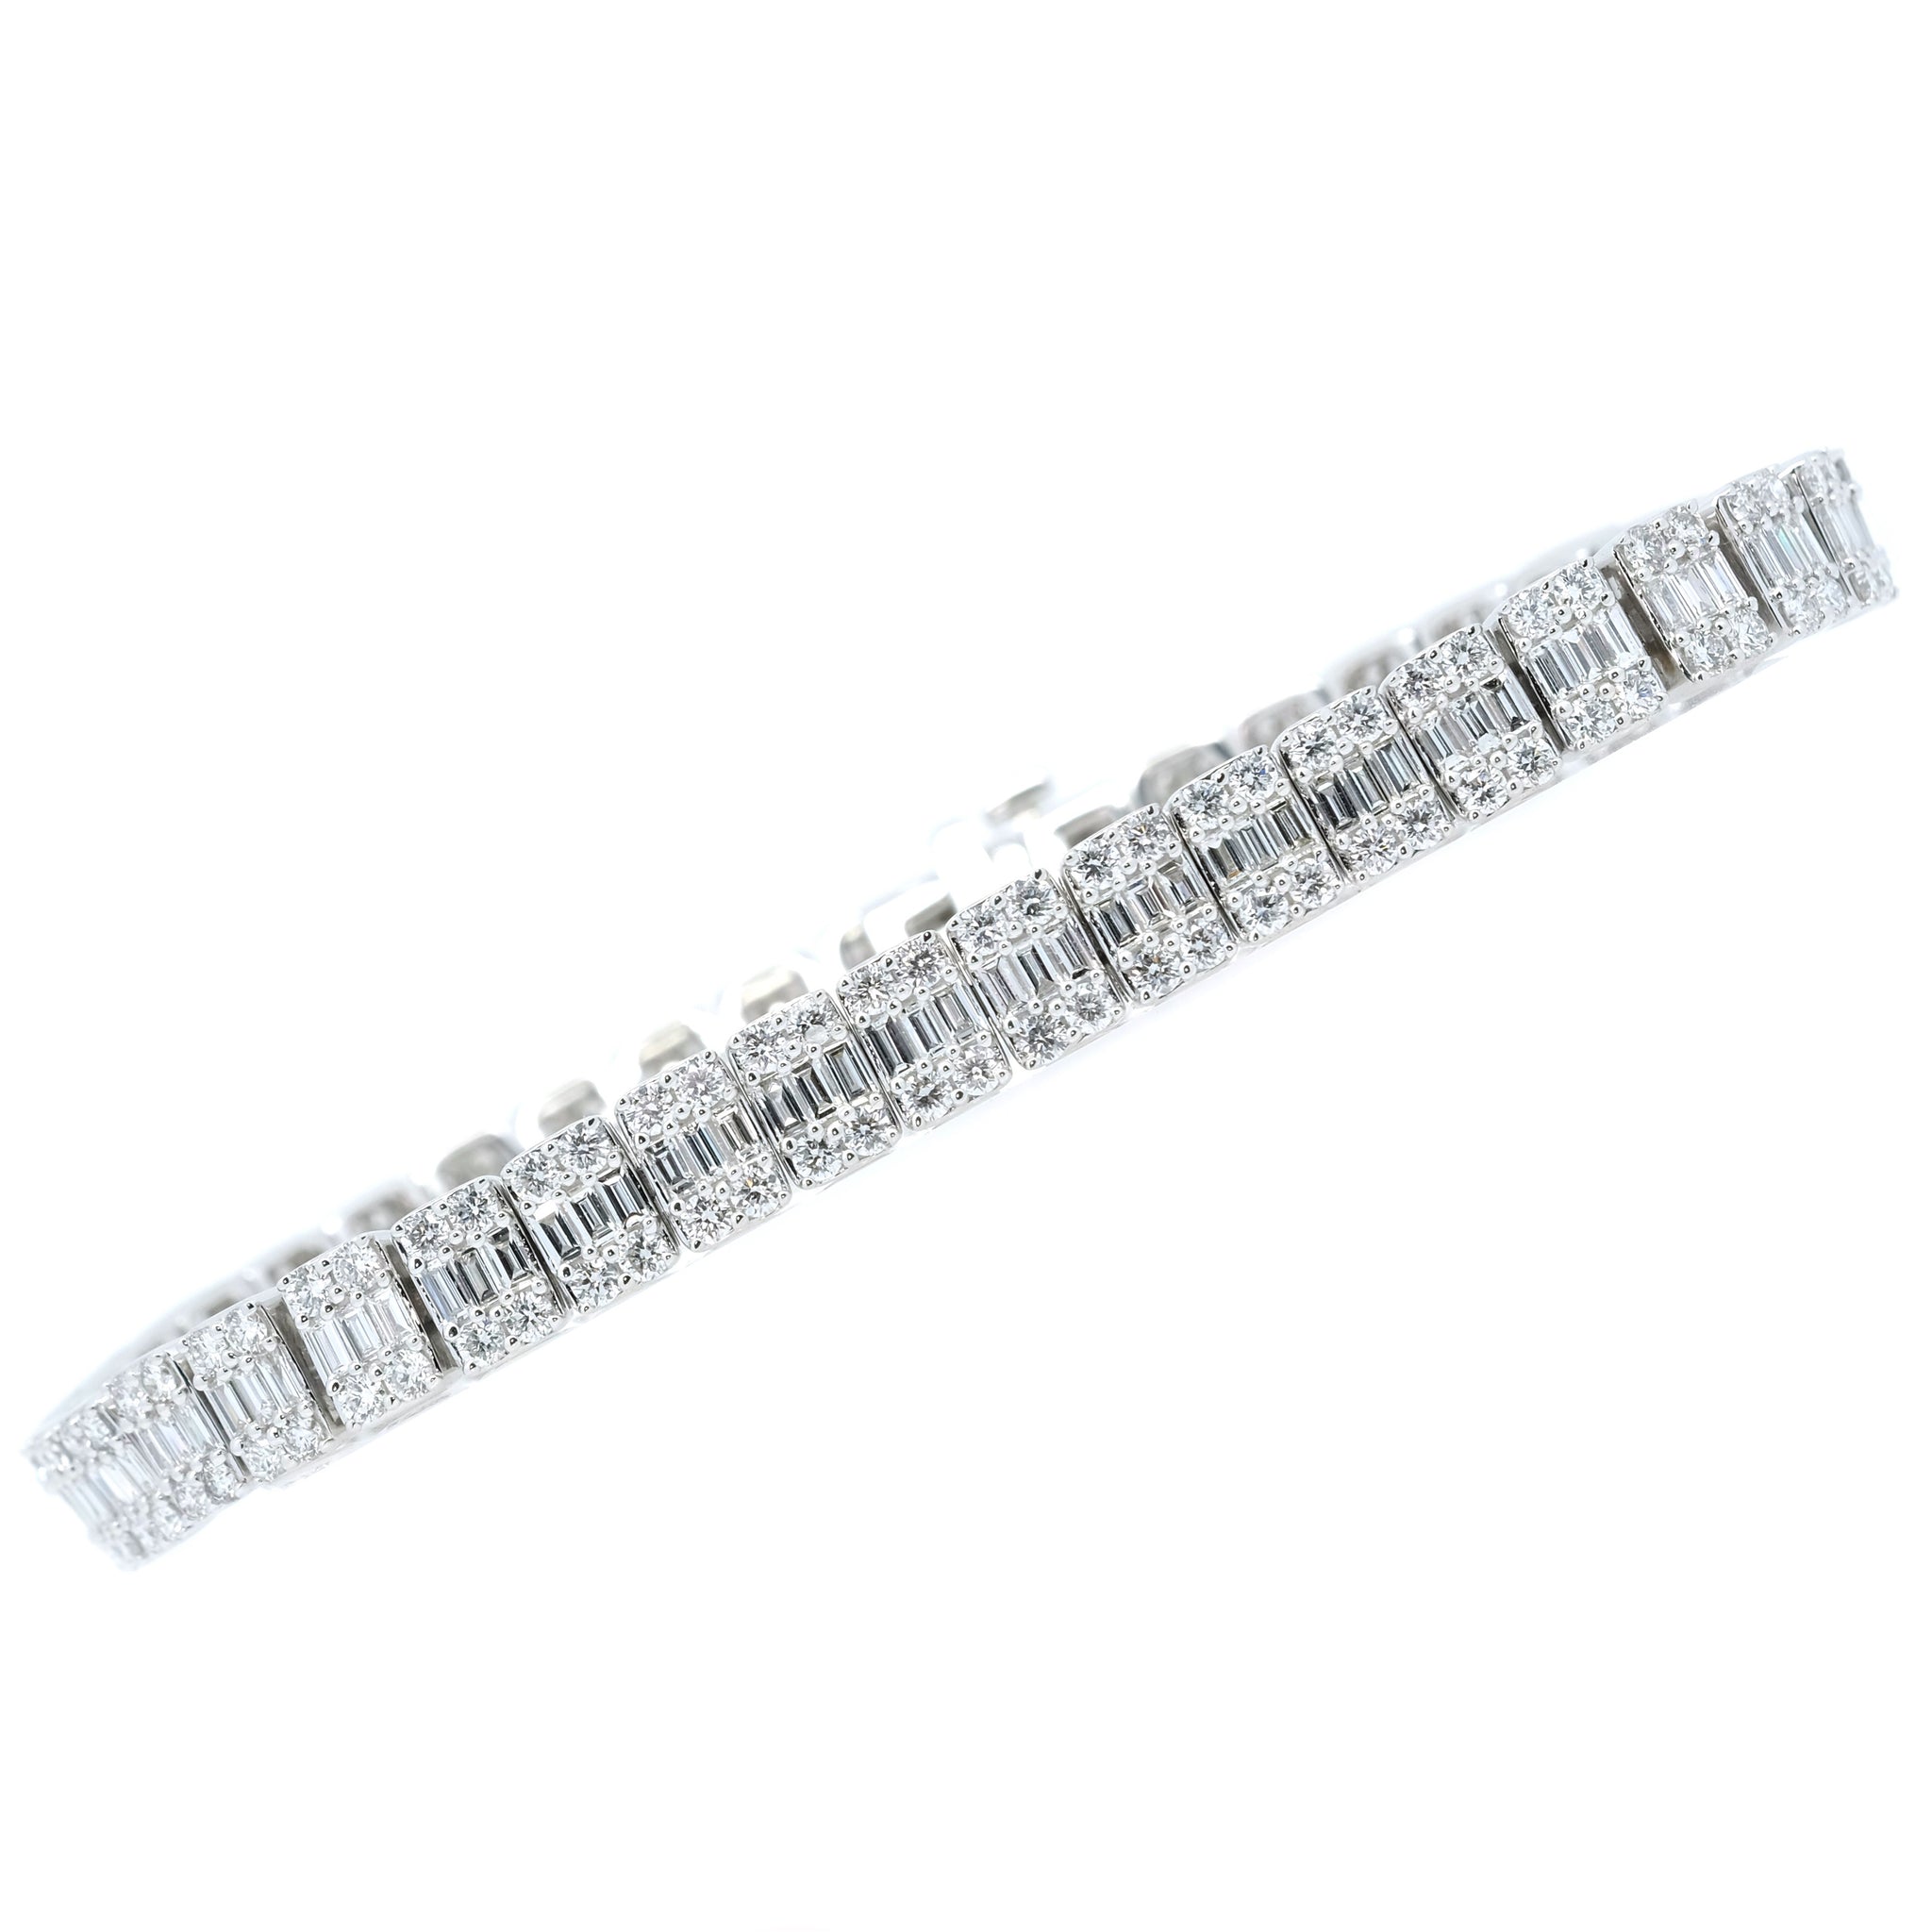 Lot 507 - Diamond tennis bracelet with baguette cut